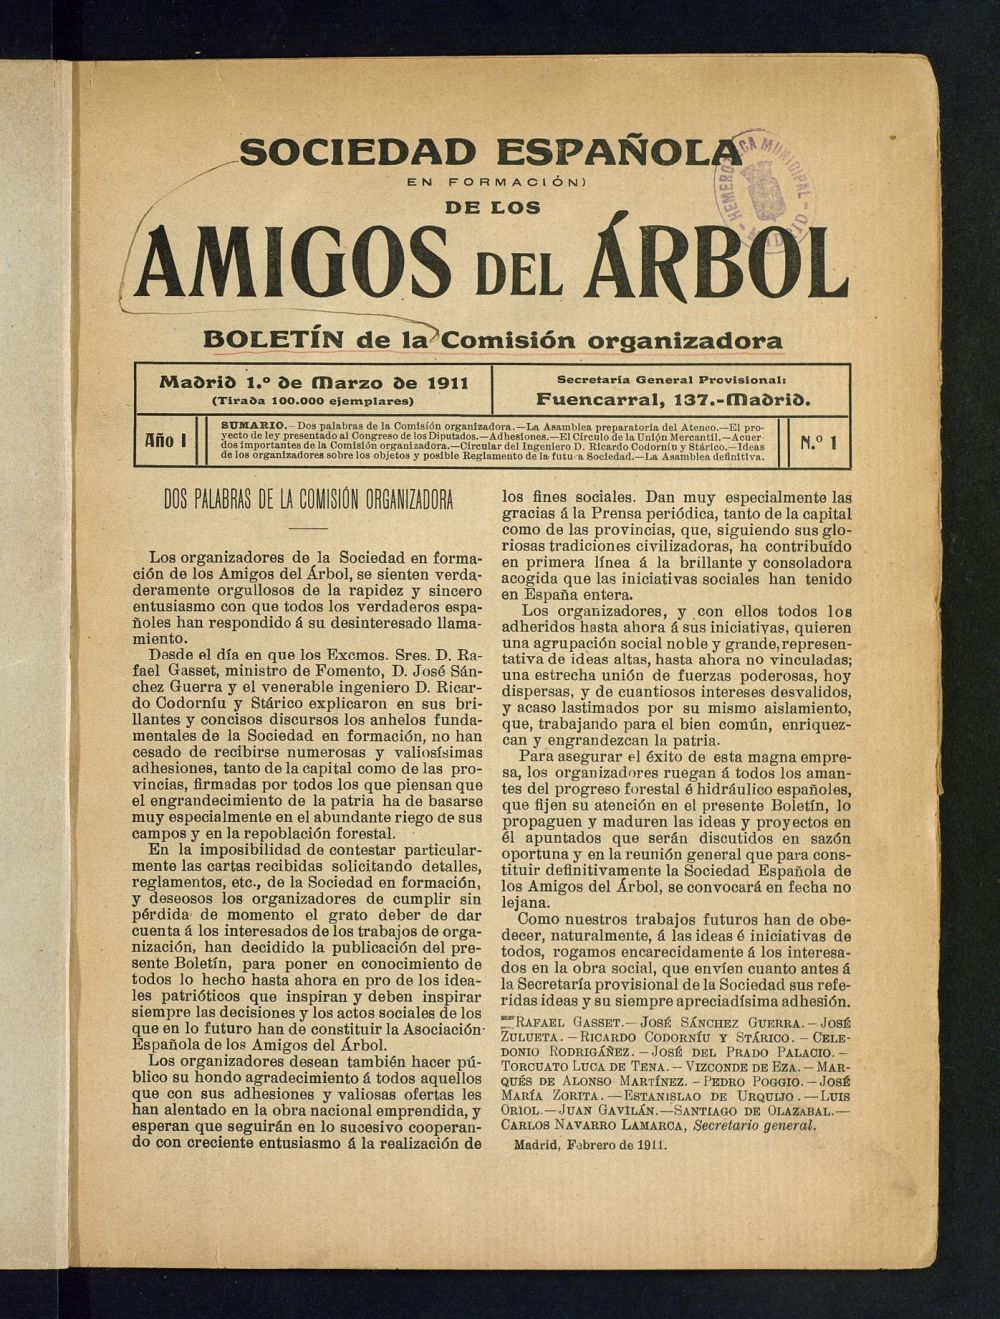 Boletn Comisin organizadora de la Sociedad Espaola de los amigos del rbol de marzo de 1911